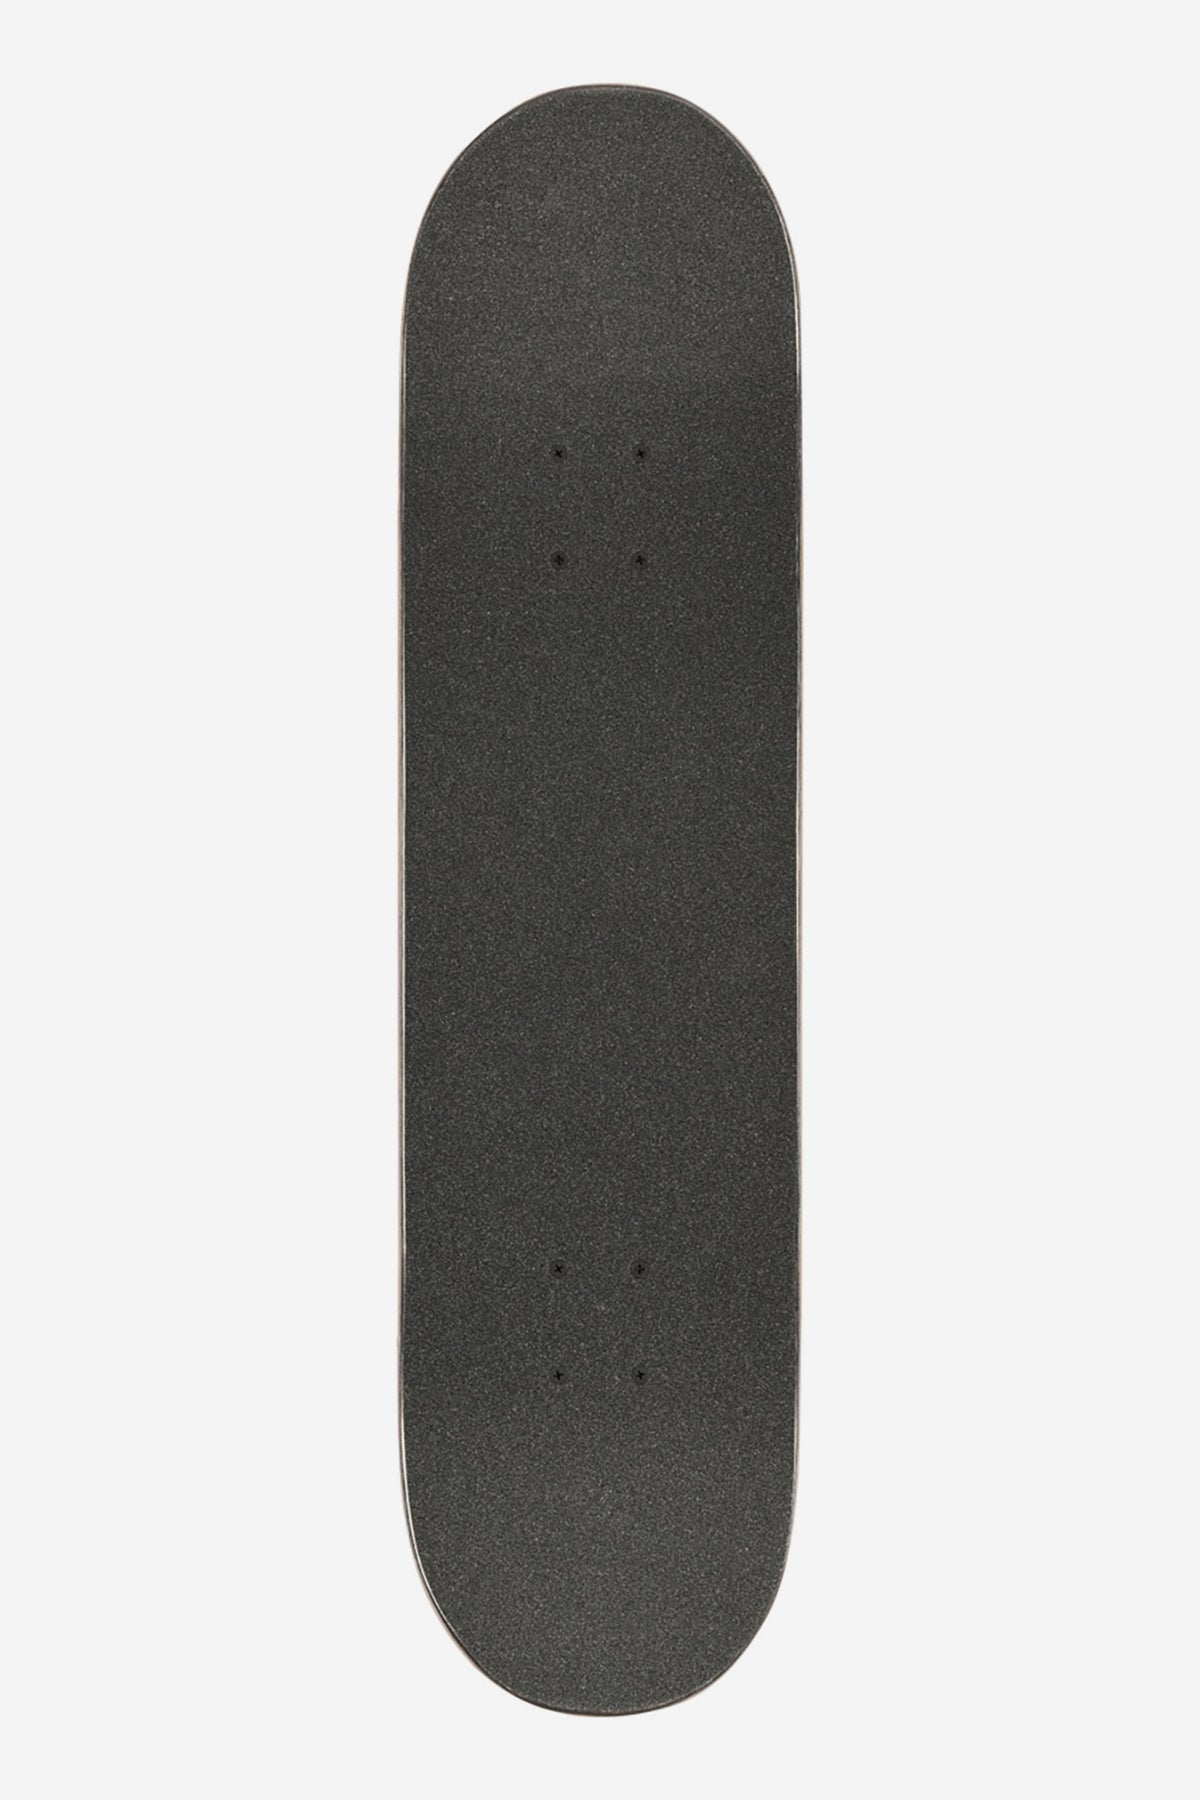 Goodstock - Black - 8.125" Complete Skateboard